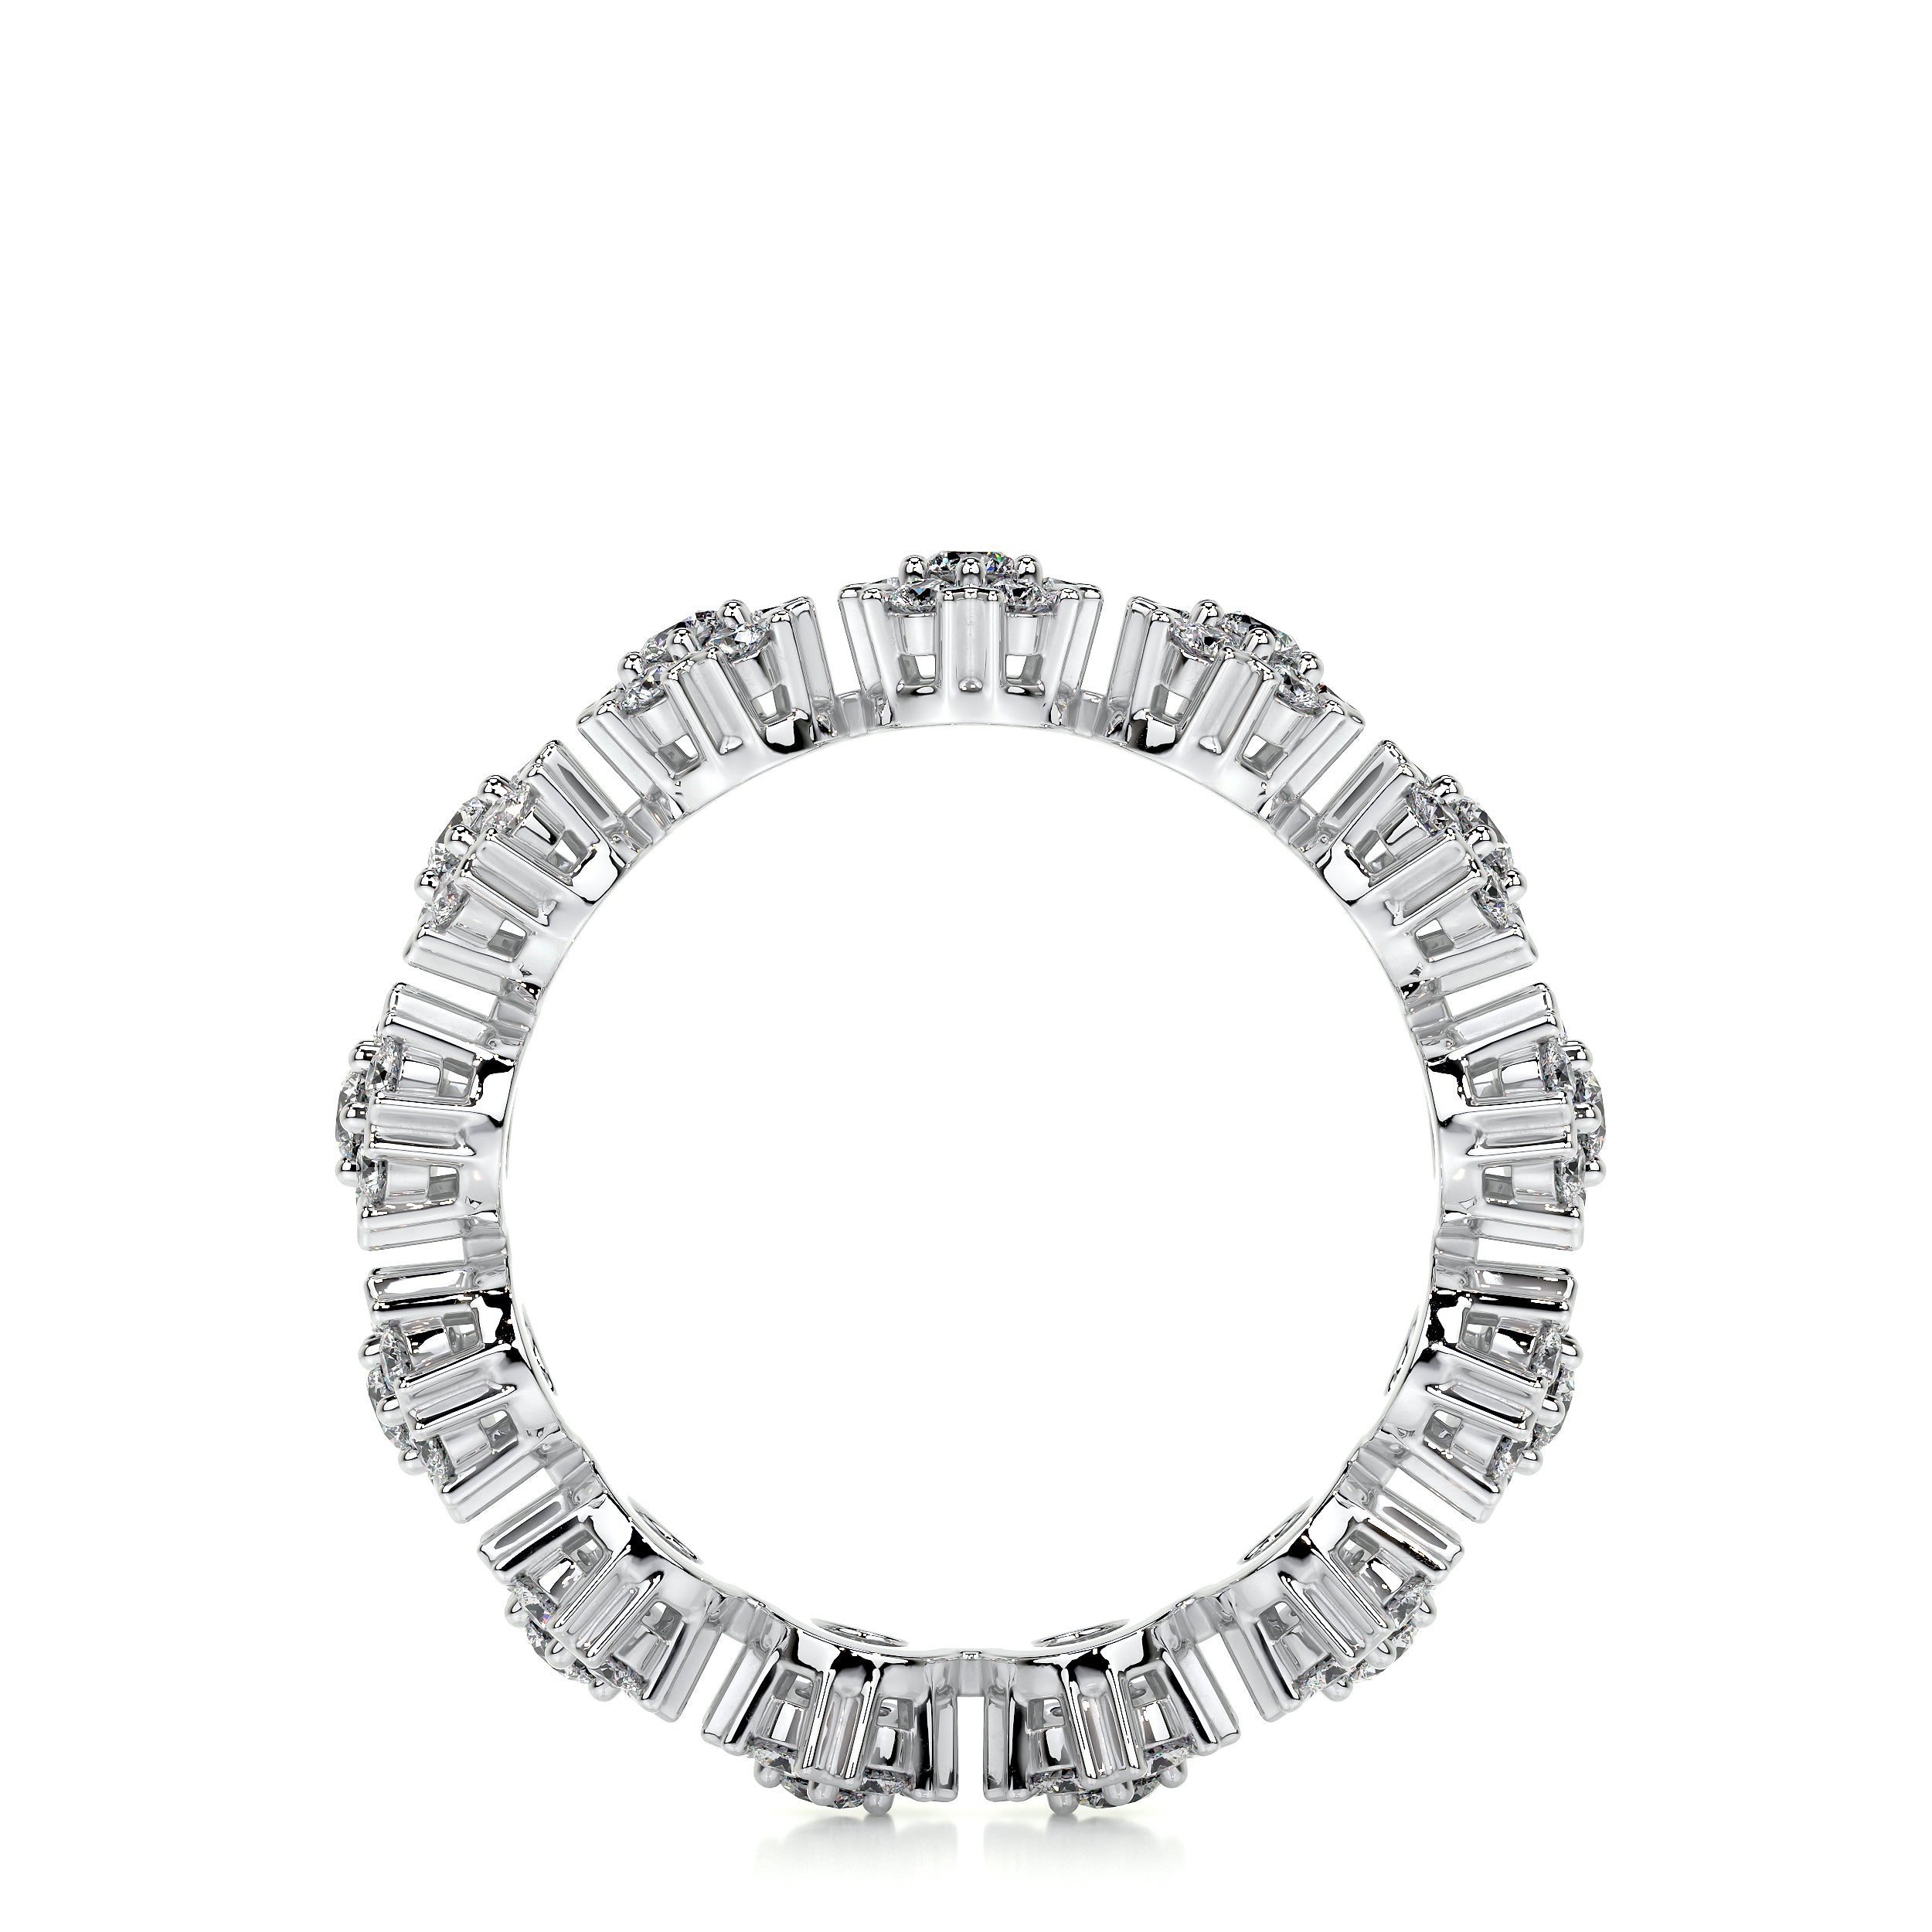 Holly Lab Grown Diamond Wedding Ring   (1 Carat) -14K White Gold